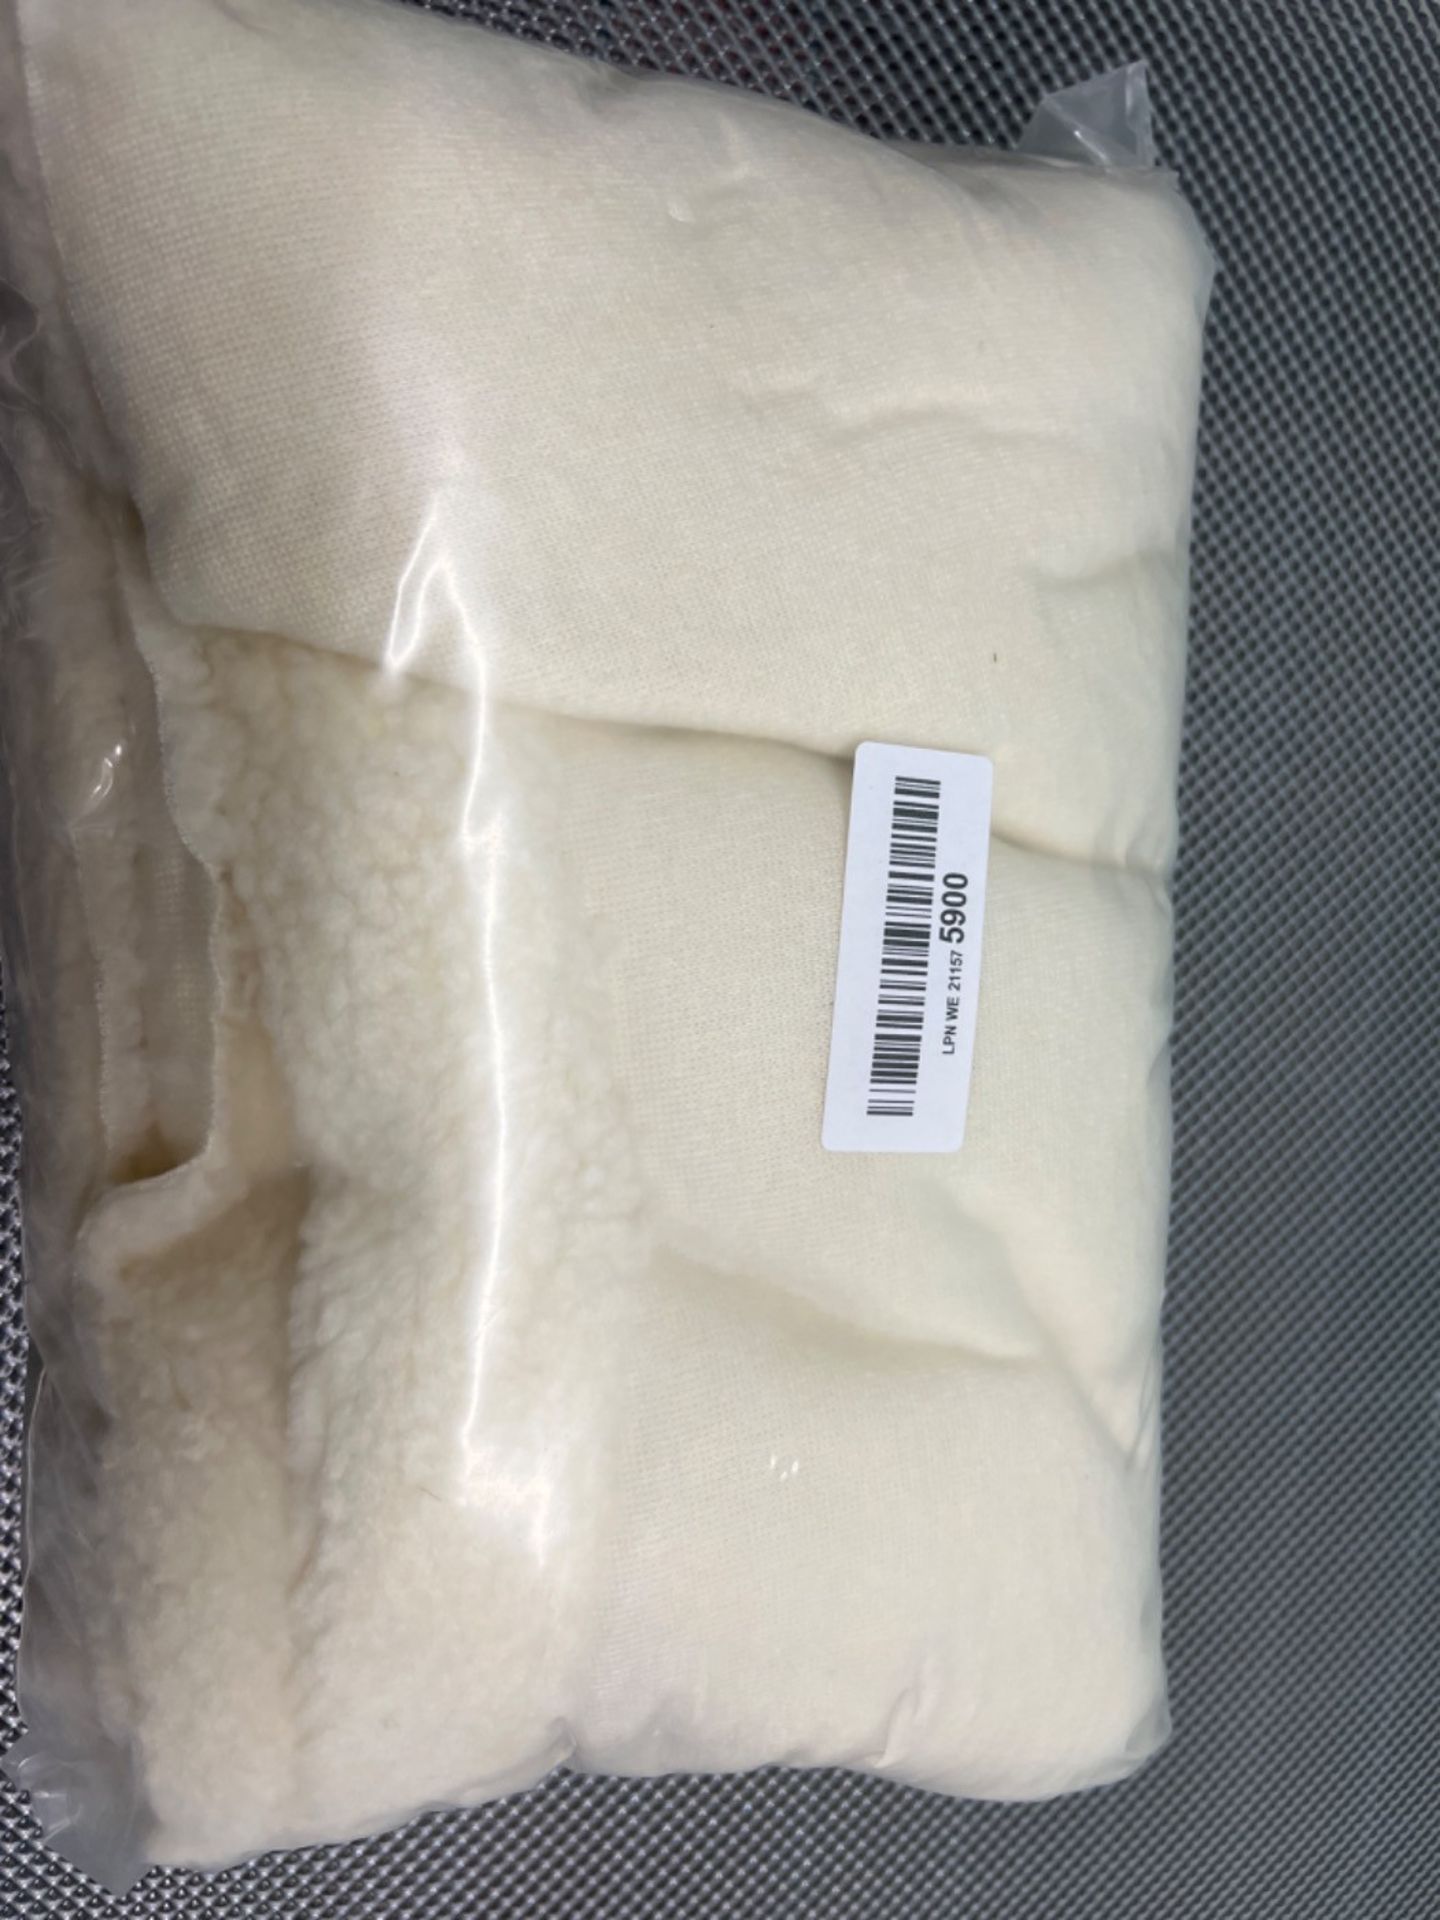 Faux Fur Sherpa Fleece Sheepskin Fabric Material - Cream - Image 2 of 3